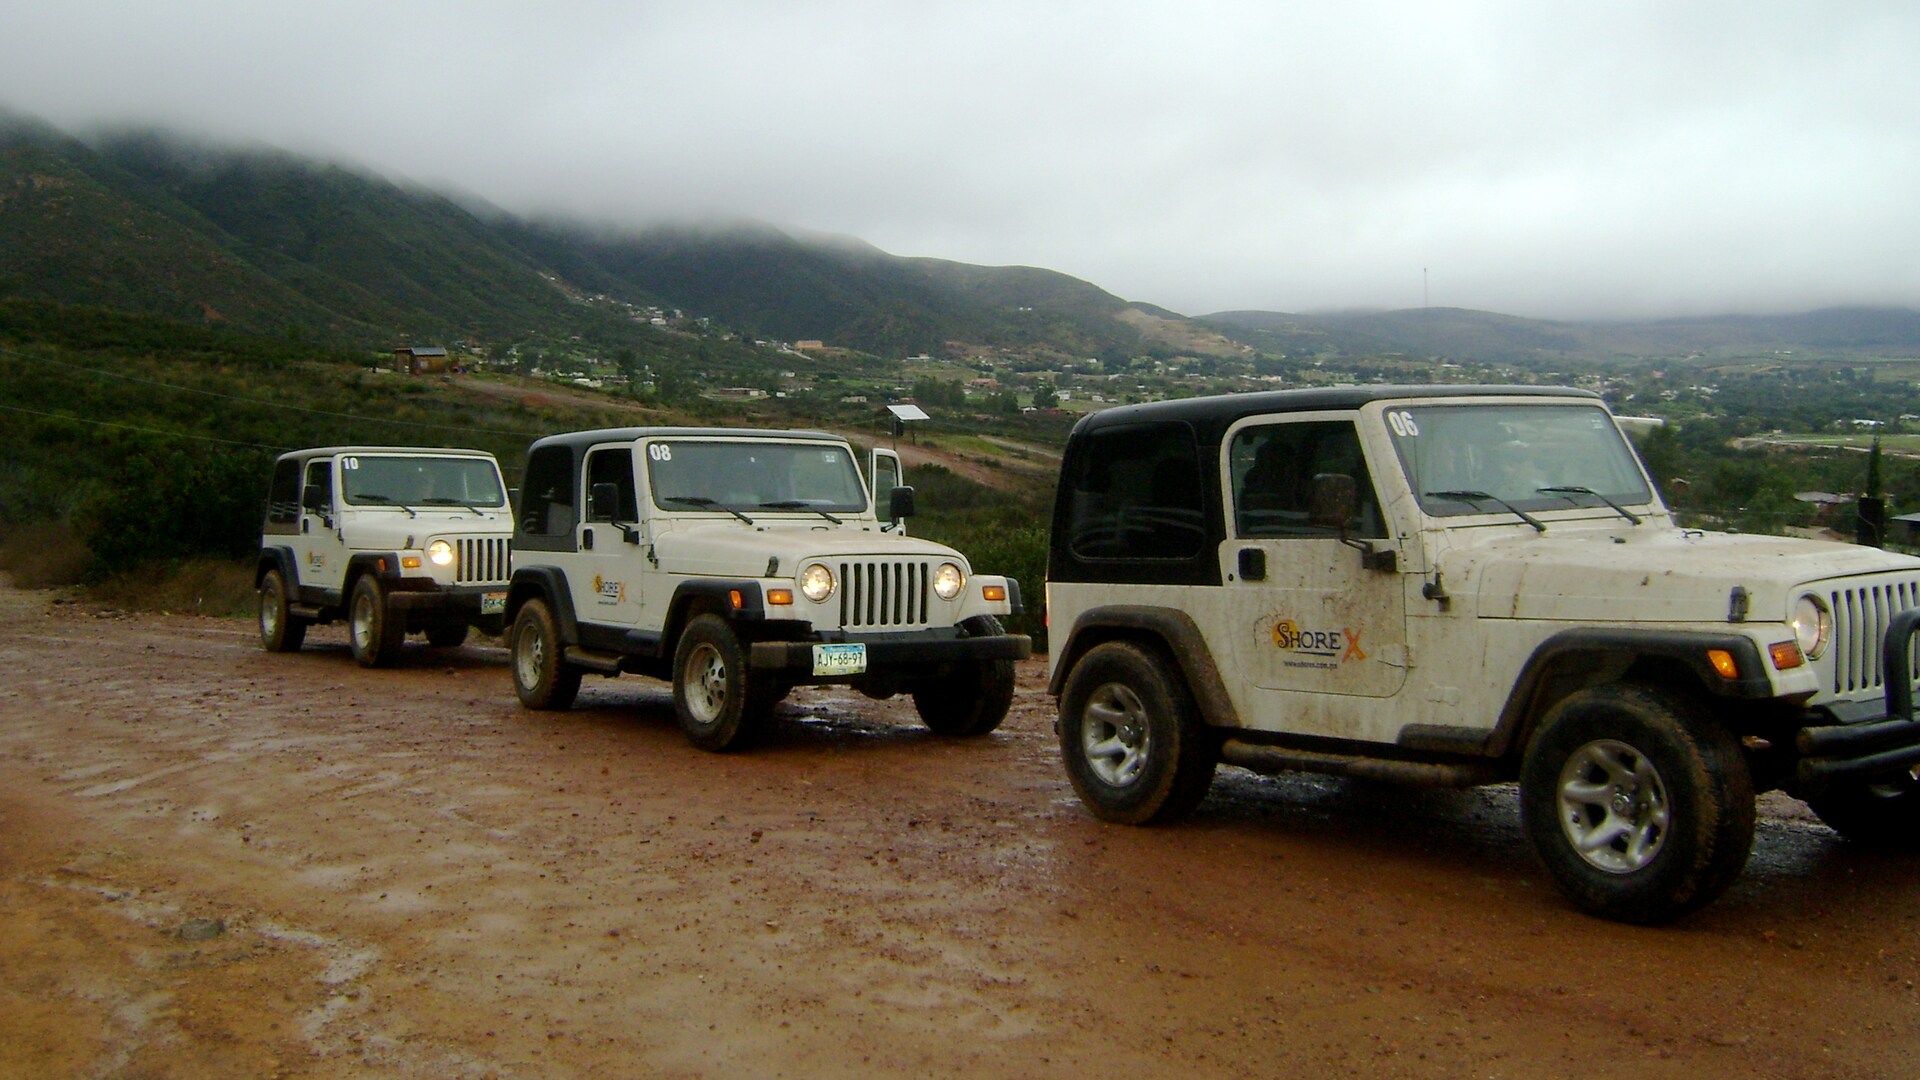 jeep adventure tour ensenada mexico